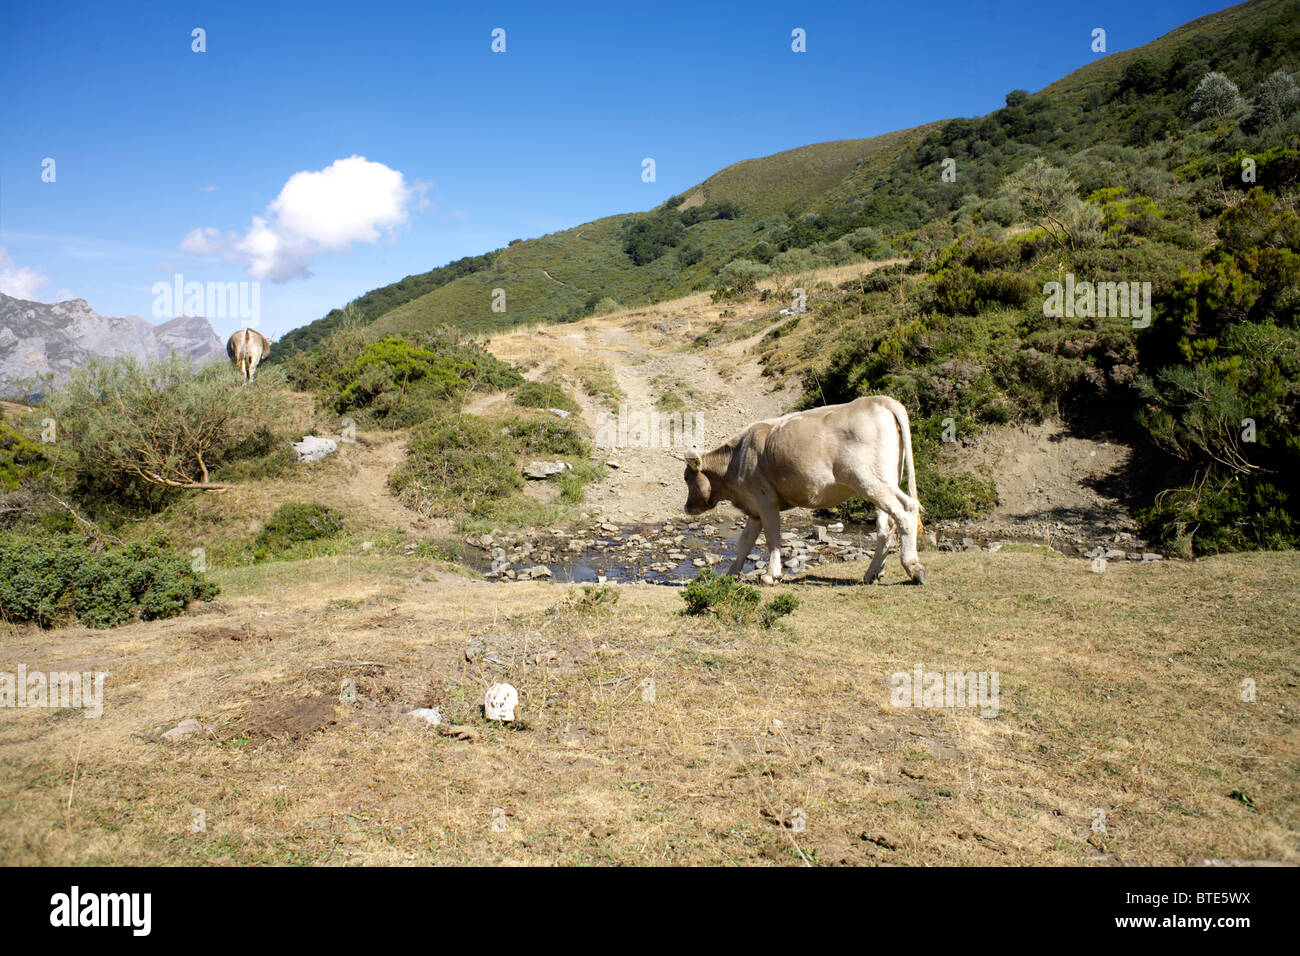 Cattle at the Arroyo del Agua de Somo or Arroyo de Somo stream, Picos de Europa, Rio, cow, cows, way, path, natural, nature, Stock Photo